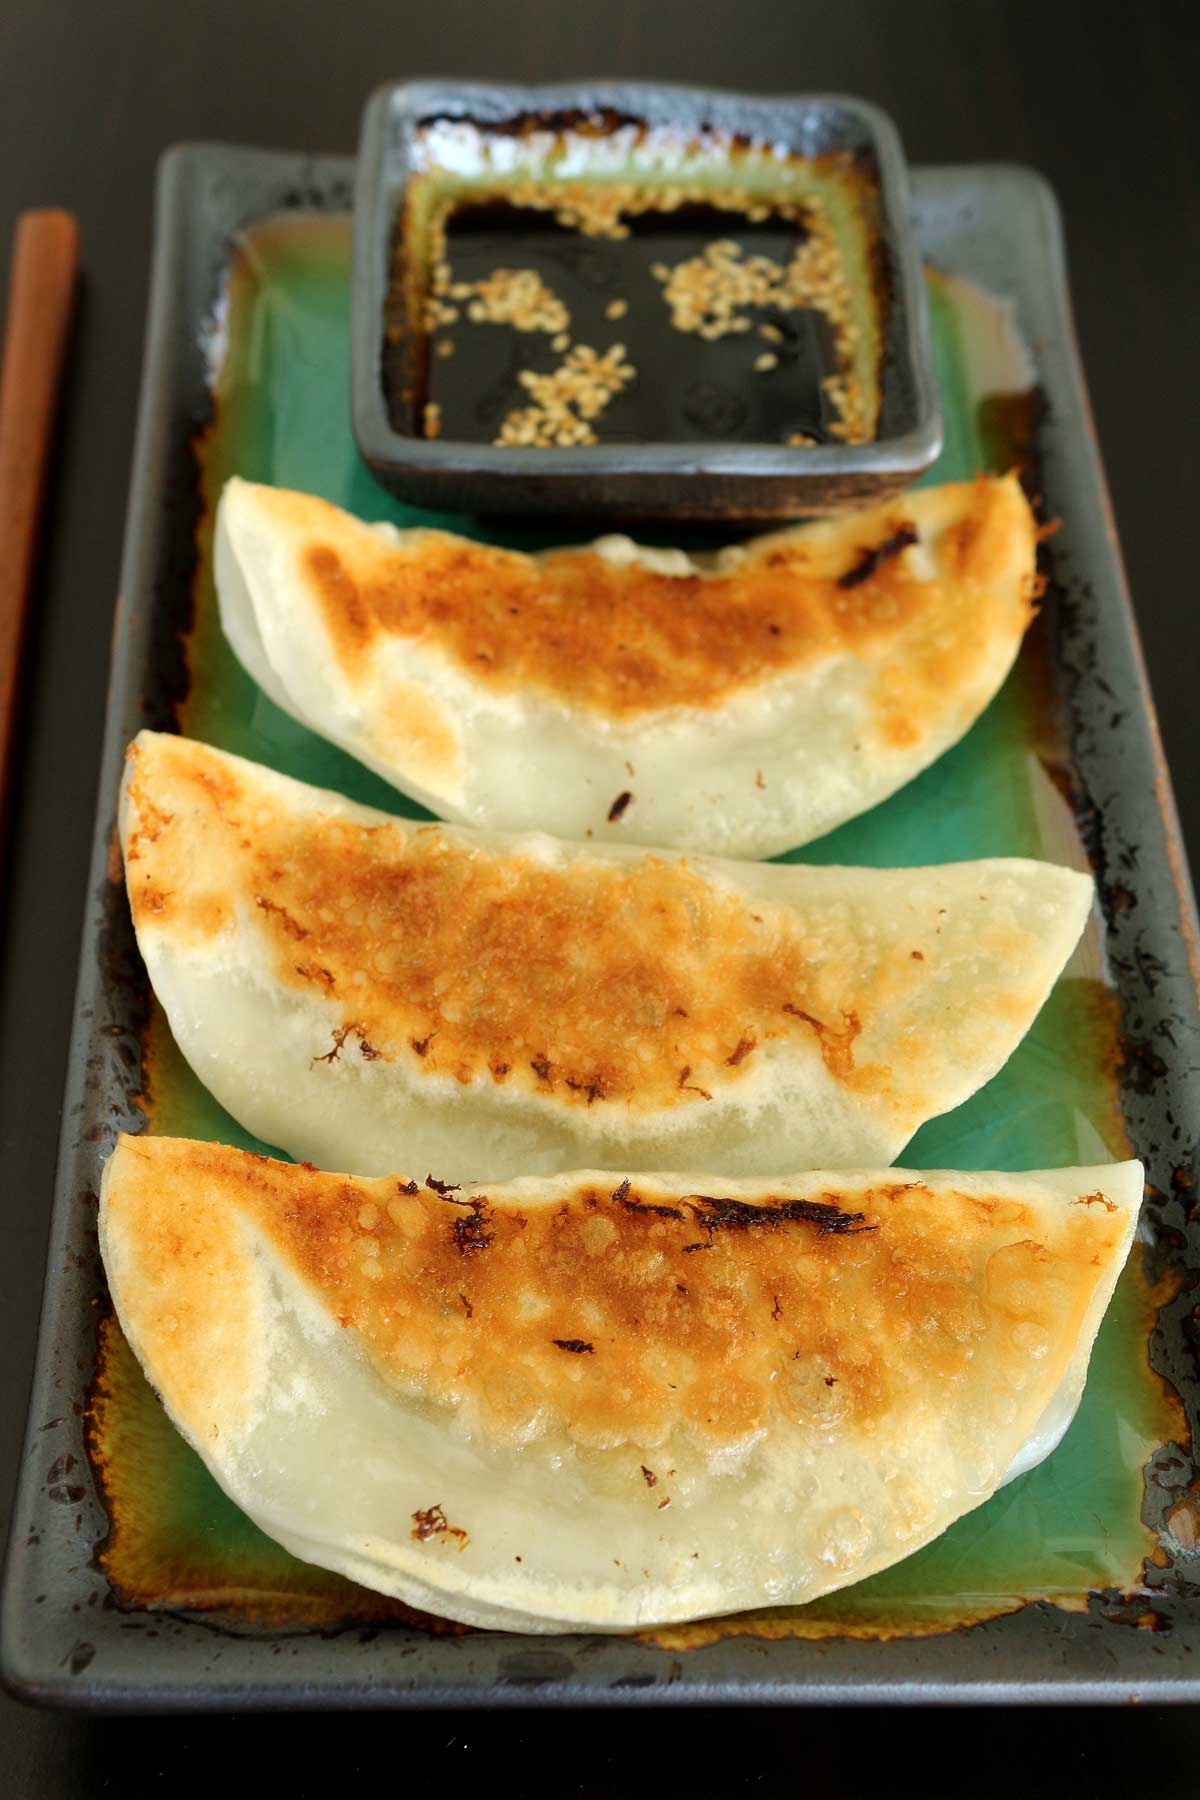 Closeup of pan-fried dumplings on a green rectangular plate.